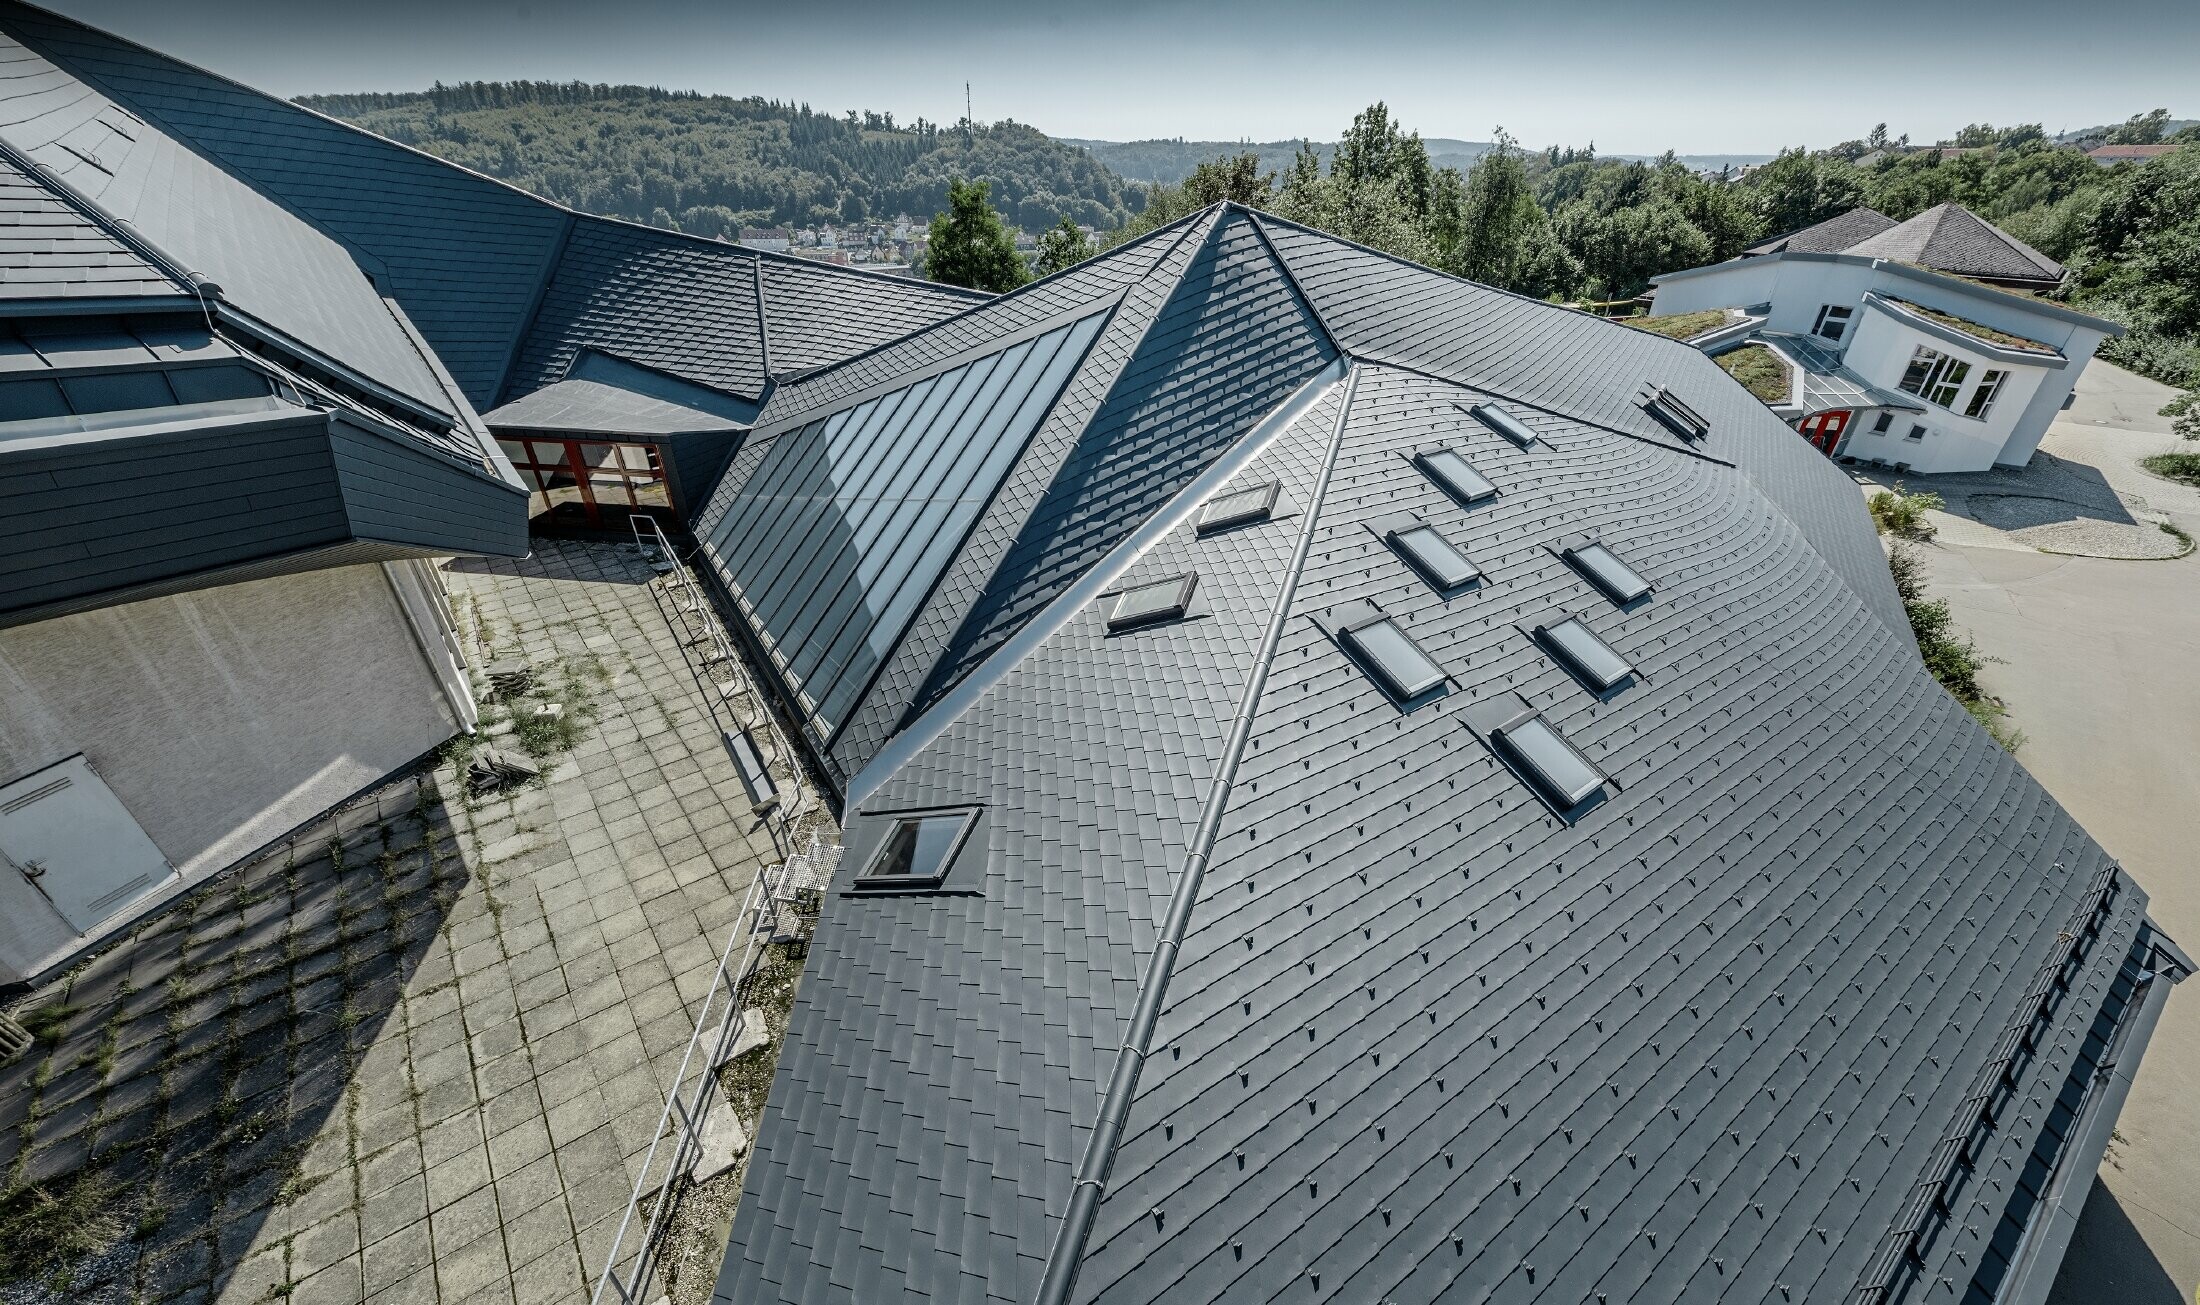 Waldorfschule in Heidenheim mit neu saniertem Dach, die große Dachfläche mit vielen Verwinkelungen und Dachneigungen wurde mit der PREFA Dachschindel in anthrazit eingedeckt